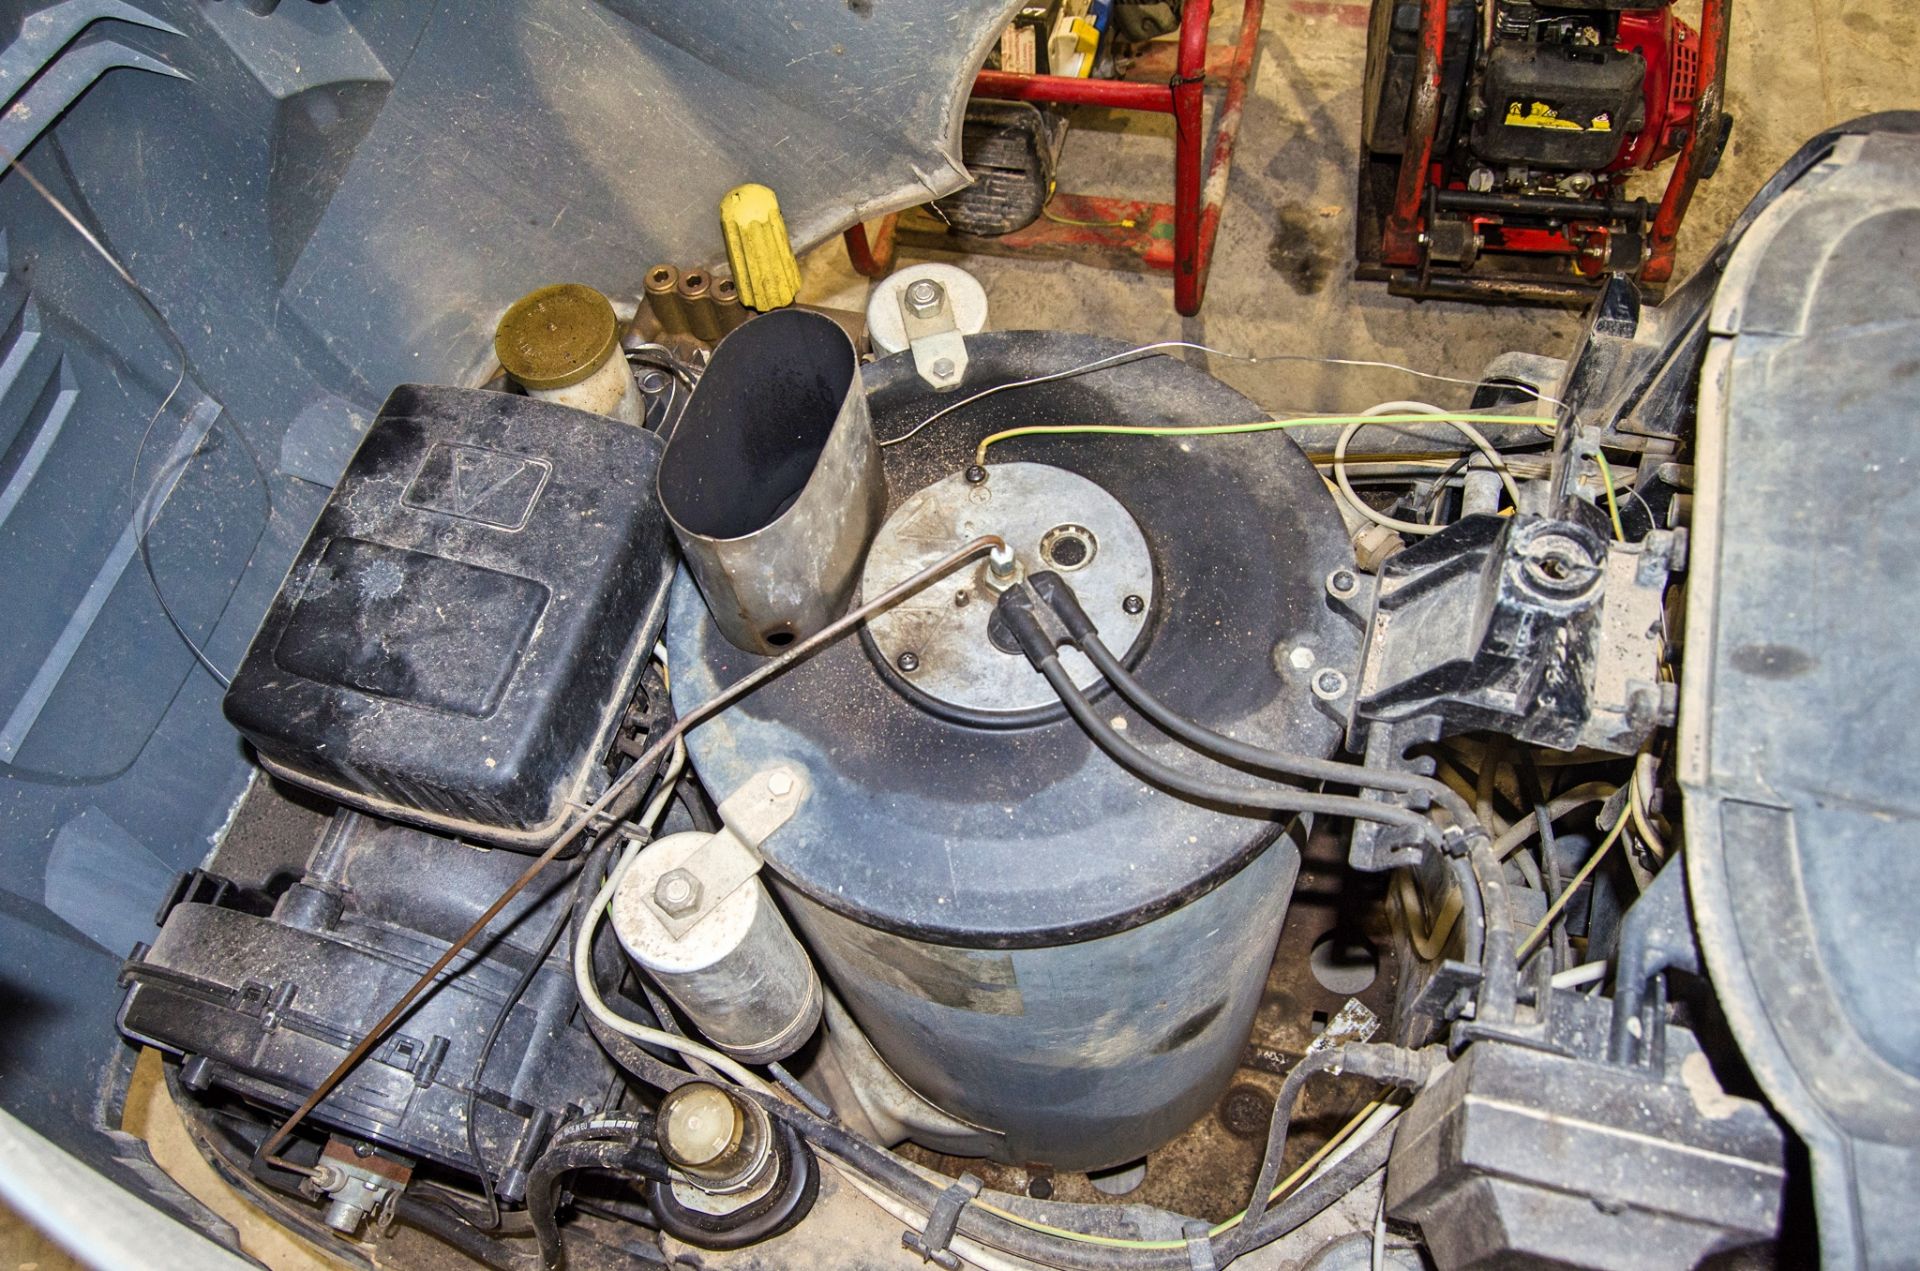 Karcher Professional HDS 7/9 4m 110v diesel fuelled steam cleaner A833848 - Image 3 of 3